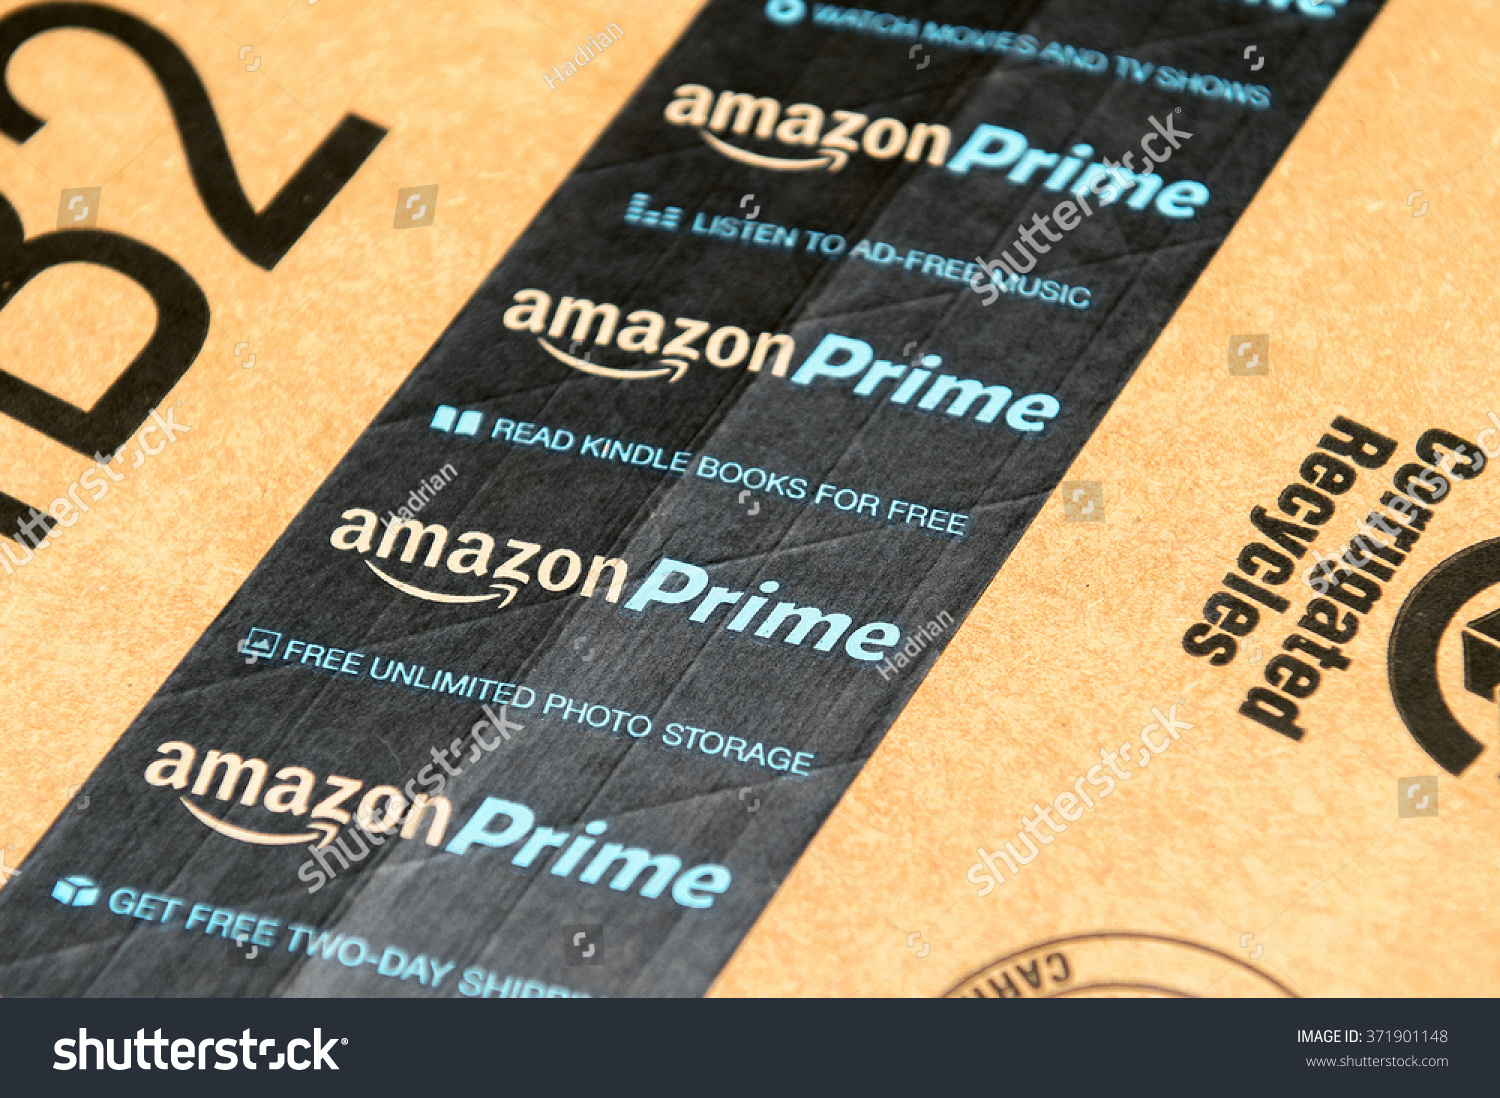 法国巴黎,2016年1月28日:Amazon Prime标识印